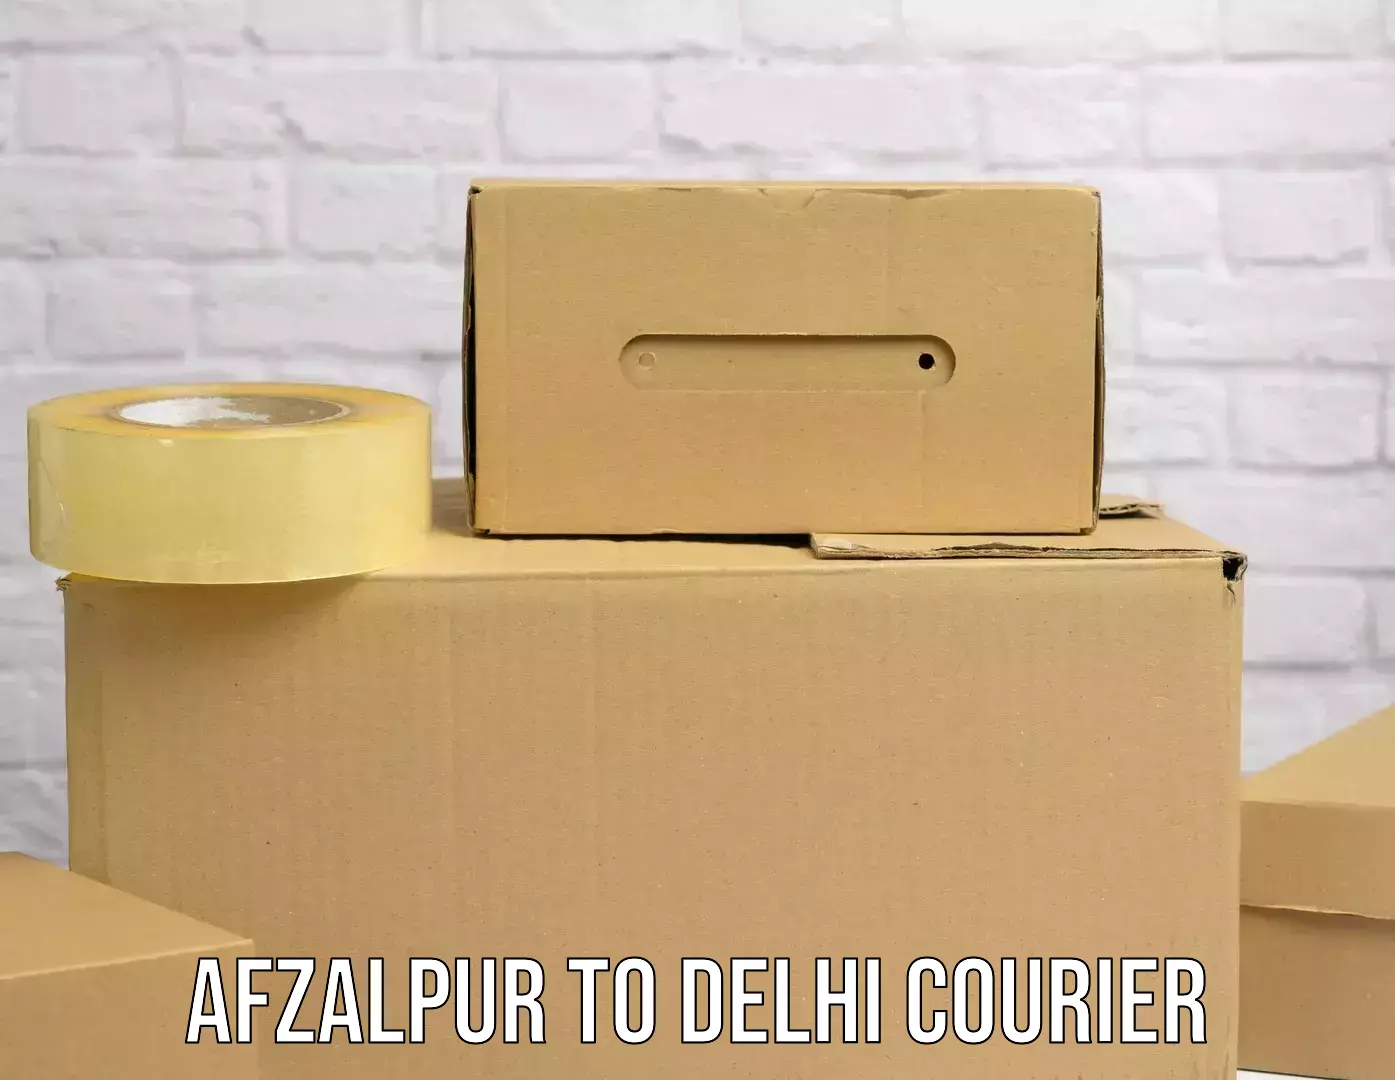 Courier service comparison Afzalpur to Delhi